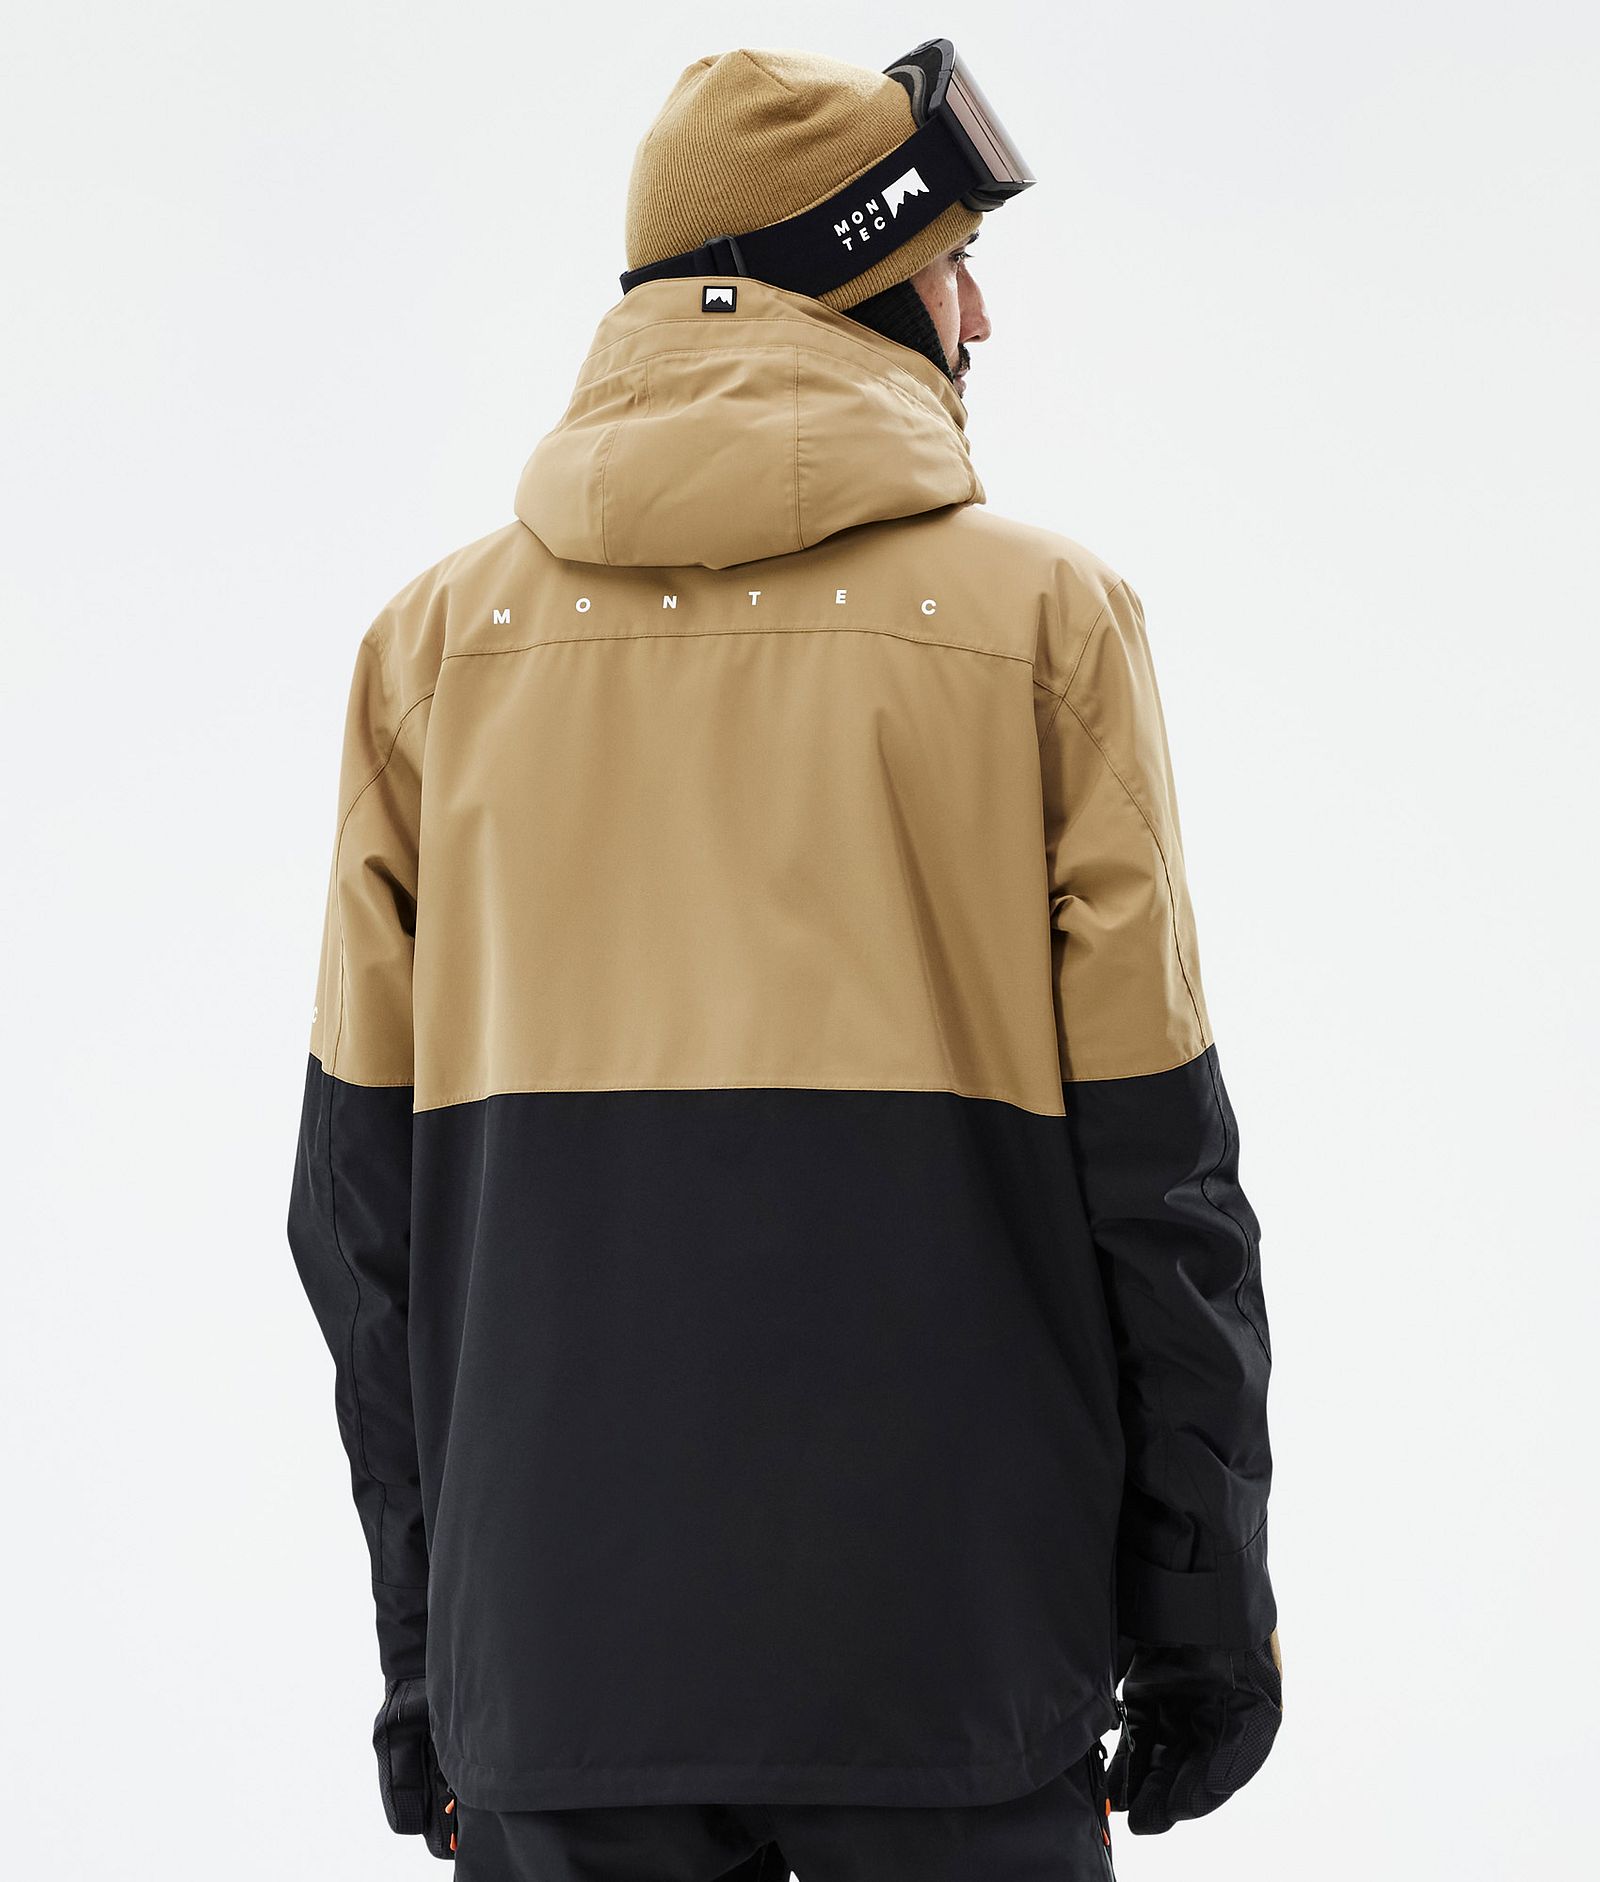 Dune Snowboard Jacket Men Gold/Black, Image 7 of 9